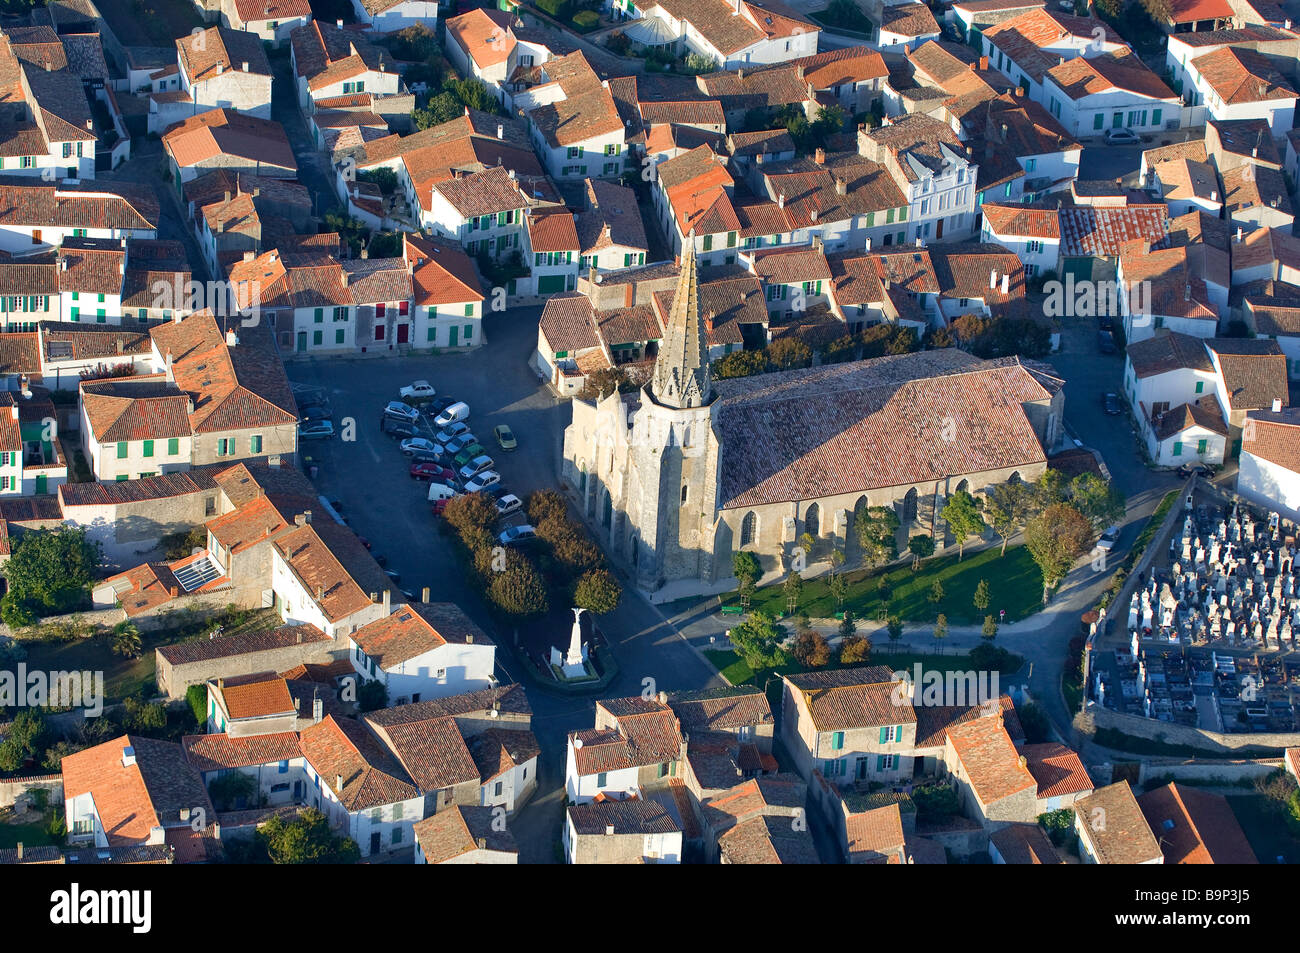 France, Charente Maritime, Ile de Re, Sainte Marie de Re (aerial view) Stock Photo